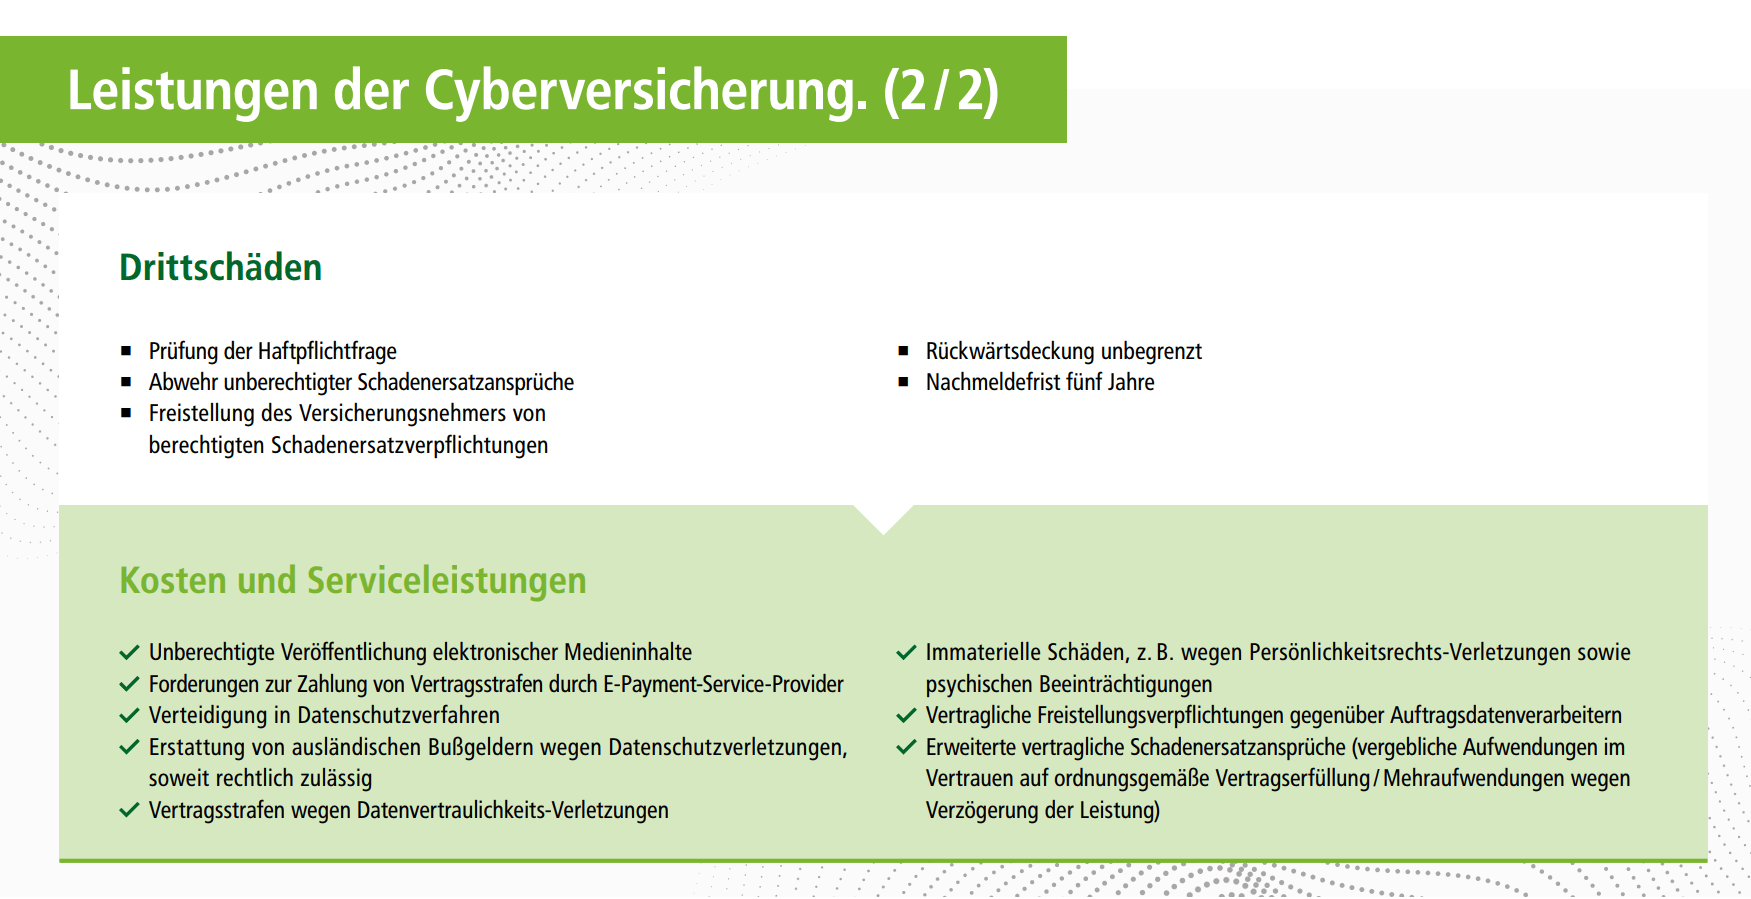 Leistungen der Cyberversicherung des HDI 2